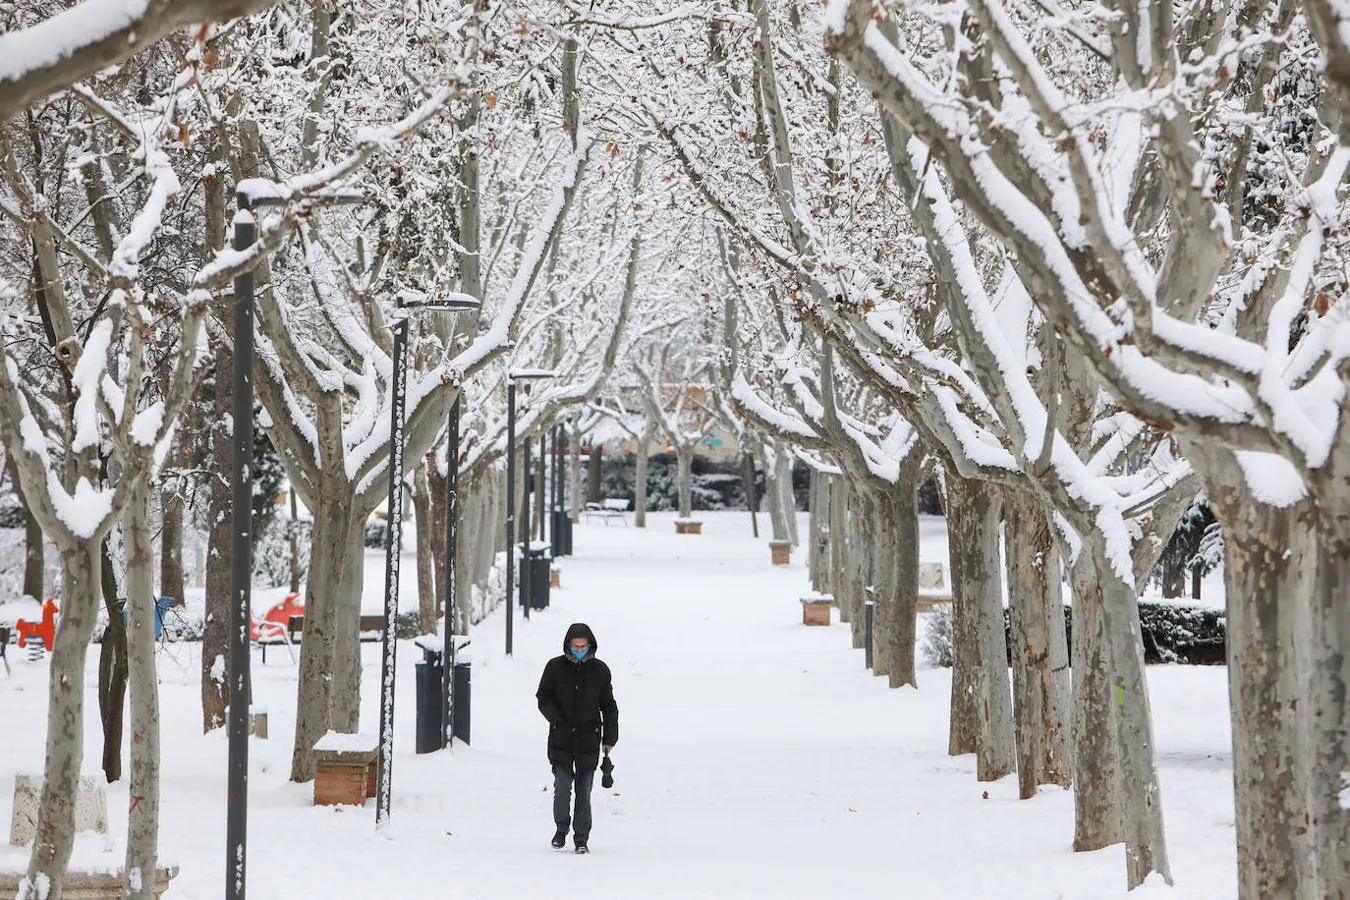 Teruel recibe la nevada que ha traído Filomena. Una gran nevada cae sobre Teruel, en Aragón (España) a 8 de enero de 2021. Aragón es una de las comunidades autónomas que se encuentra en alerta naranja (riesgo importante) por frío, nevadas y viento debido al paso de la borrasca Filomena.